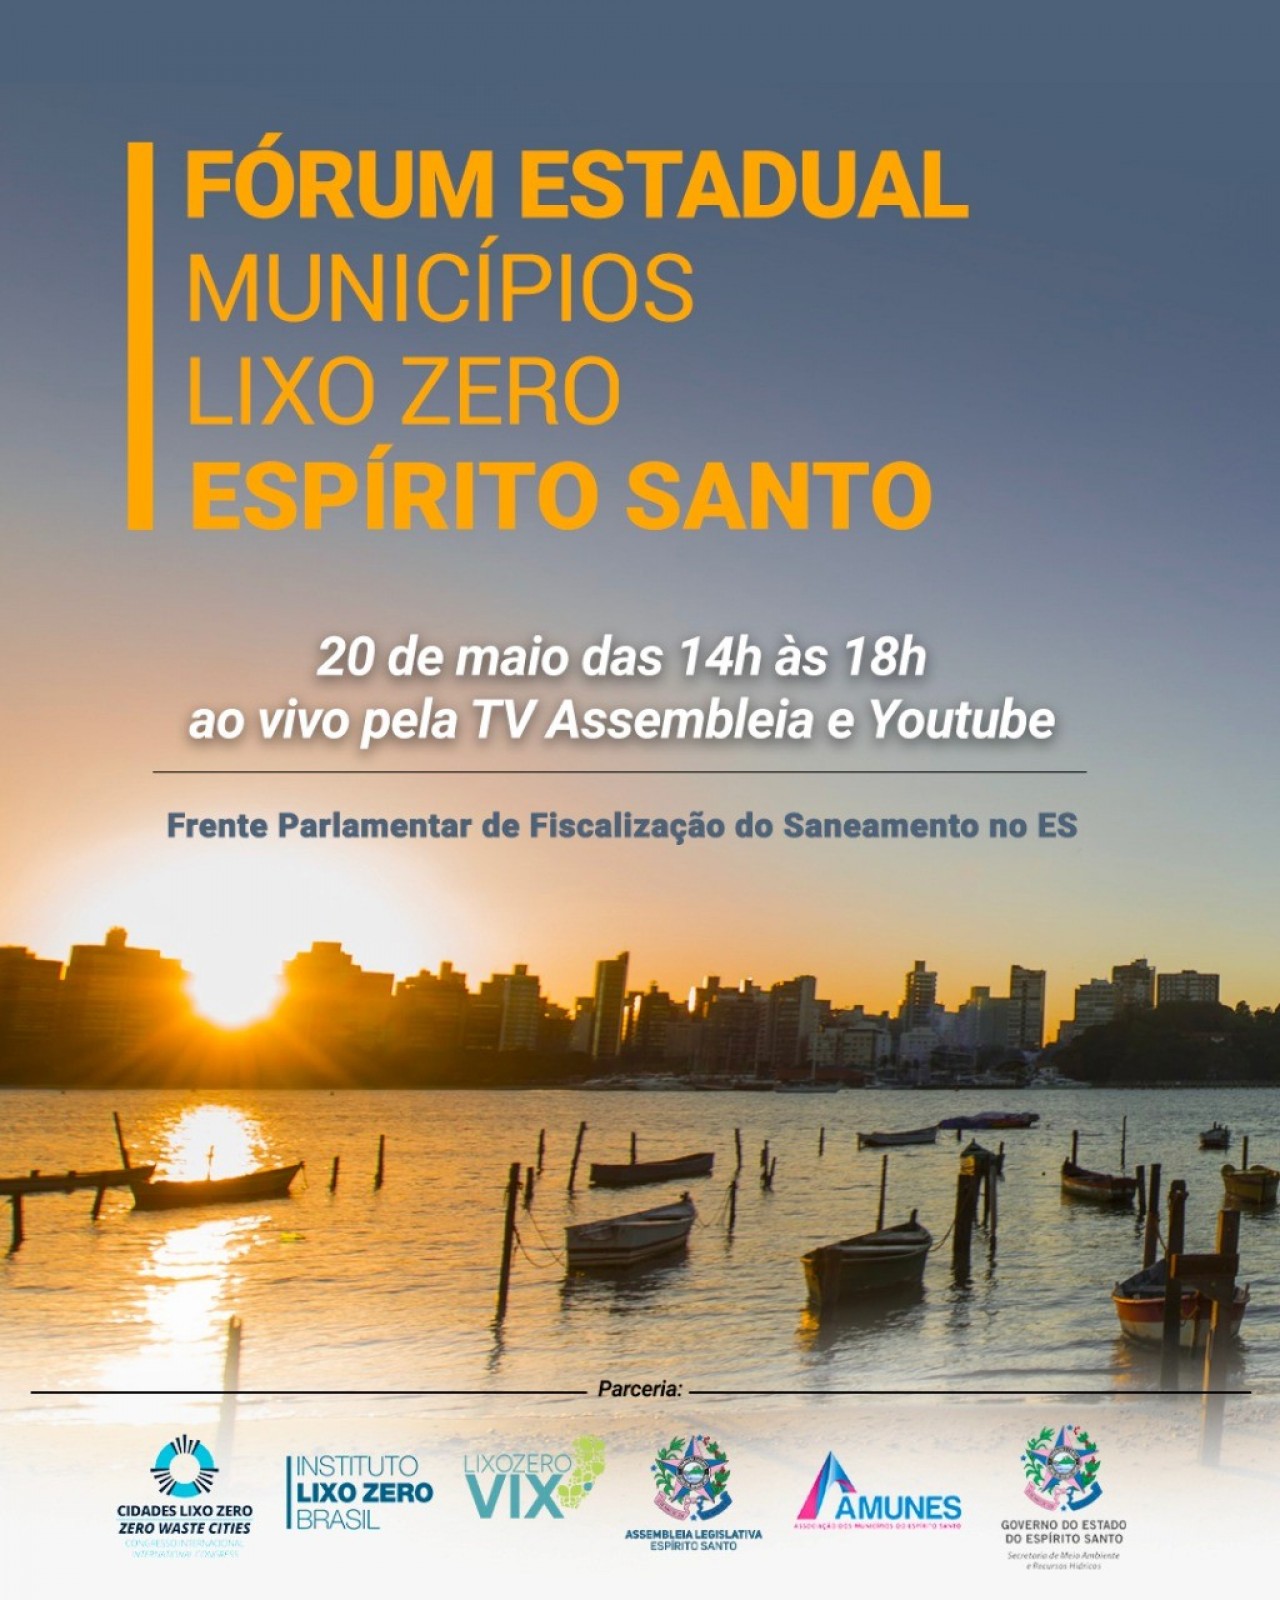 Guaçuí participa do Fórum Estadual Municípios Lixo Zero - Espírito Santo